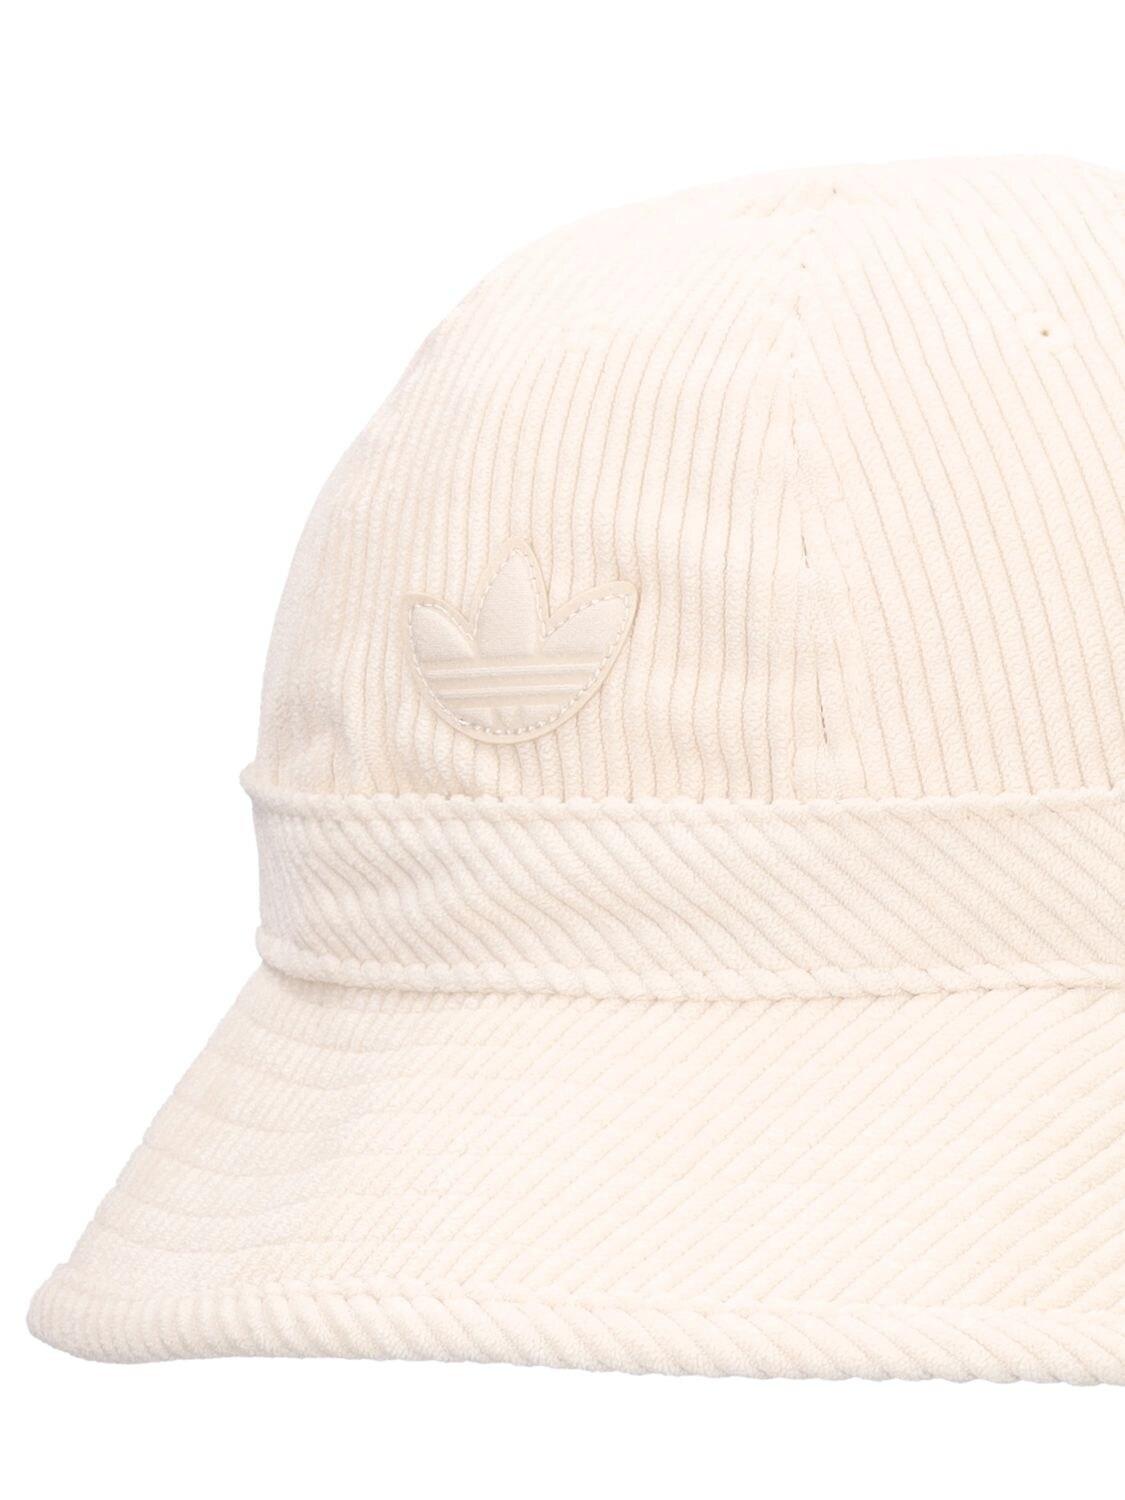 adidas Originals Corduroy Bucket Hat in Beige/White (Natural) | Lyst